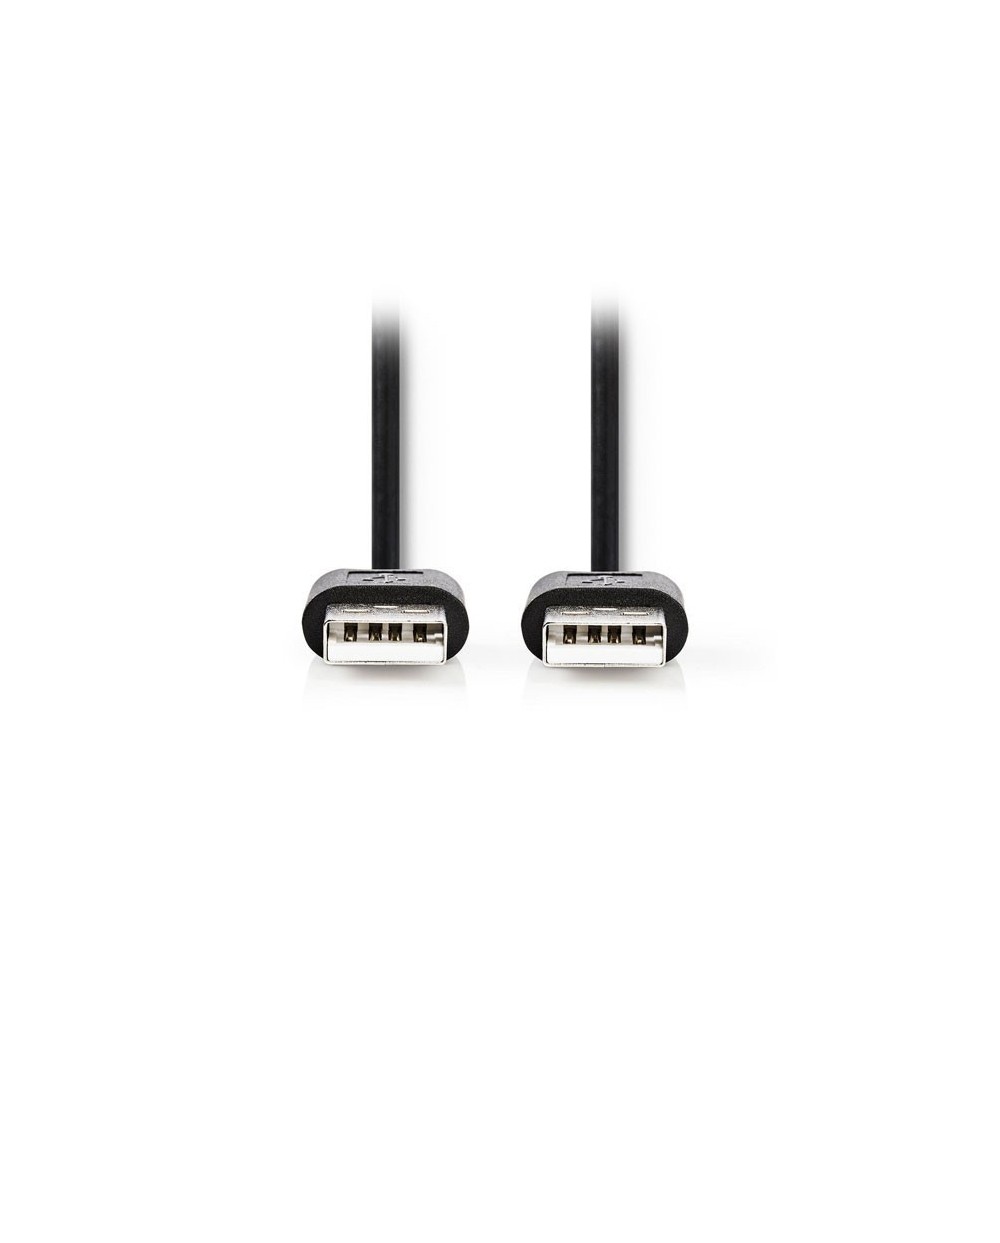 Καλώδιο USB 2.0 A αρσ. - USB A αρσ. 3m, σε μαύρο χρώμα, 233-1160, NEDIS CCGT60000BK30